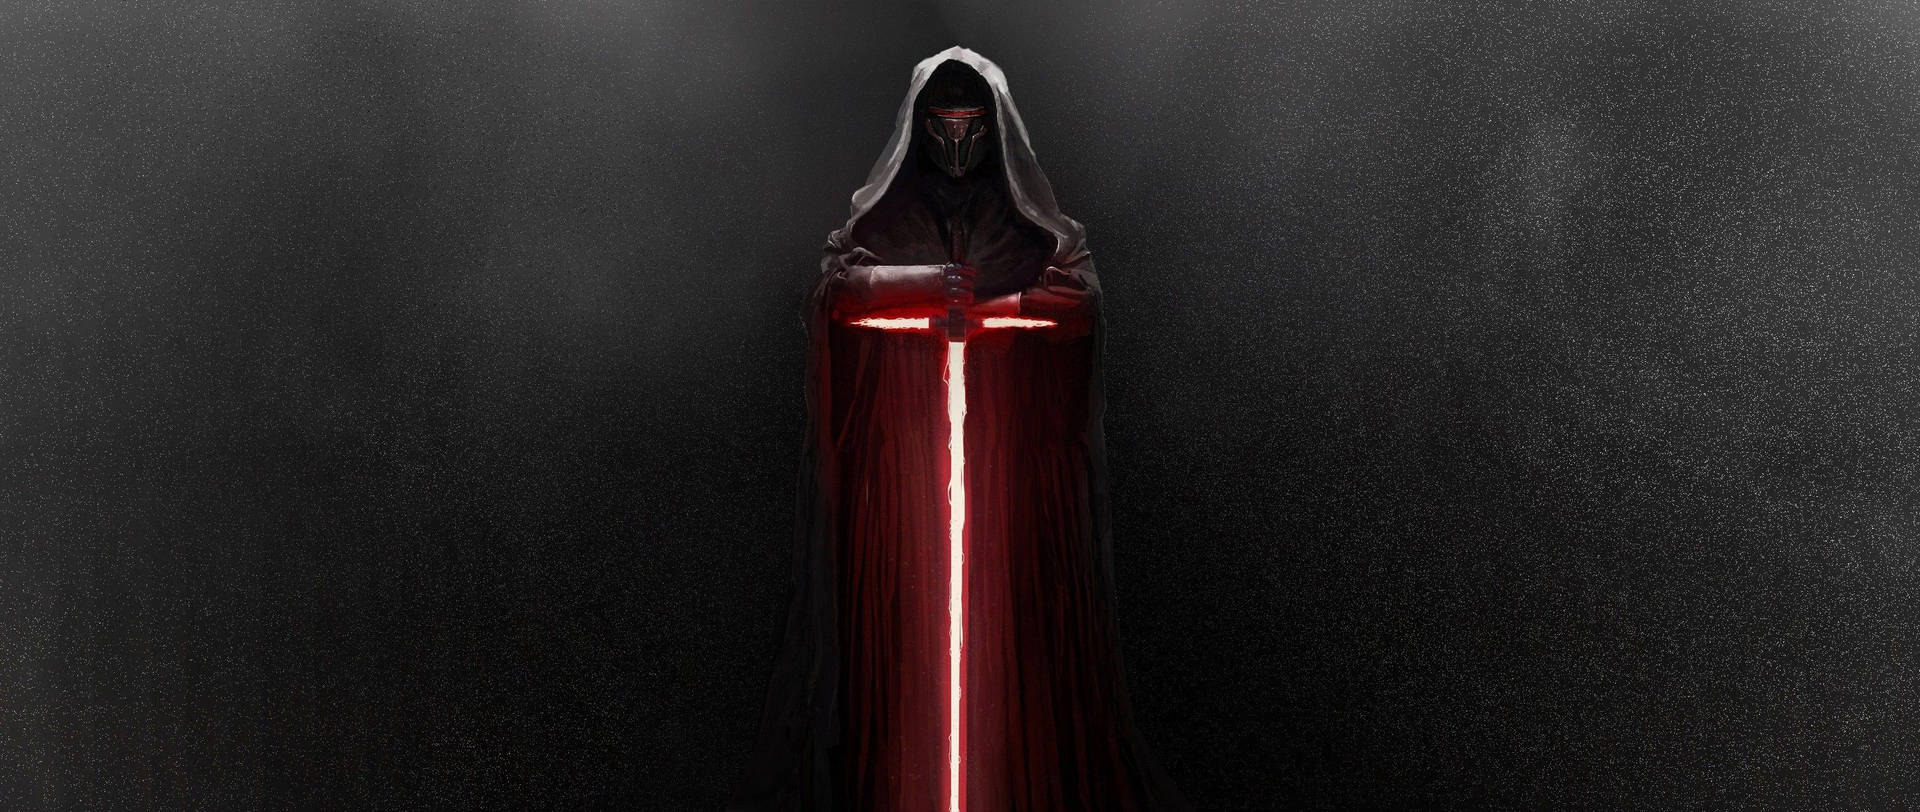 Kylo Ren As Darth Vader Background